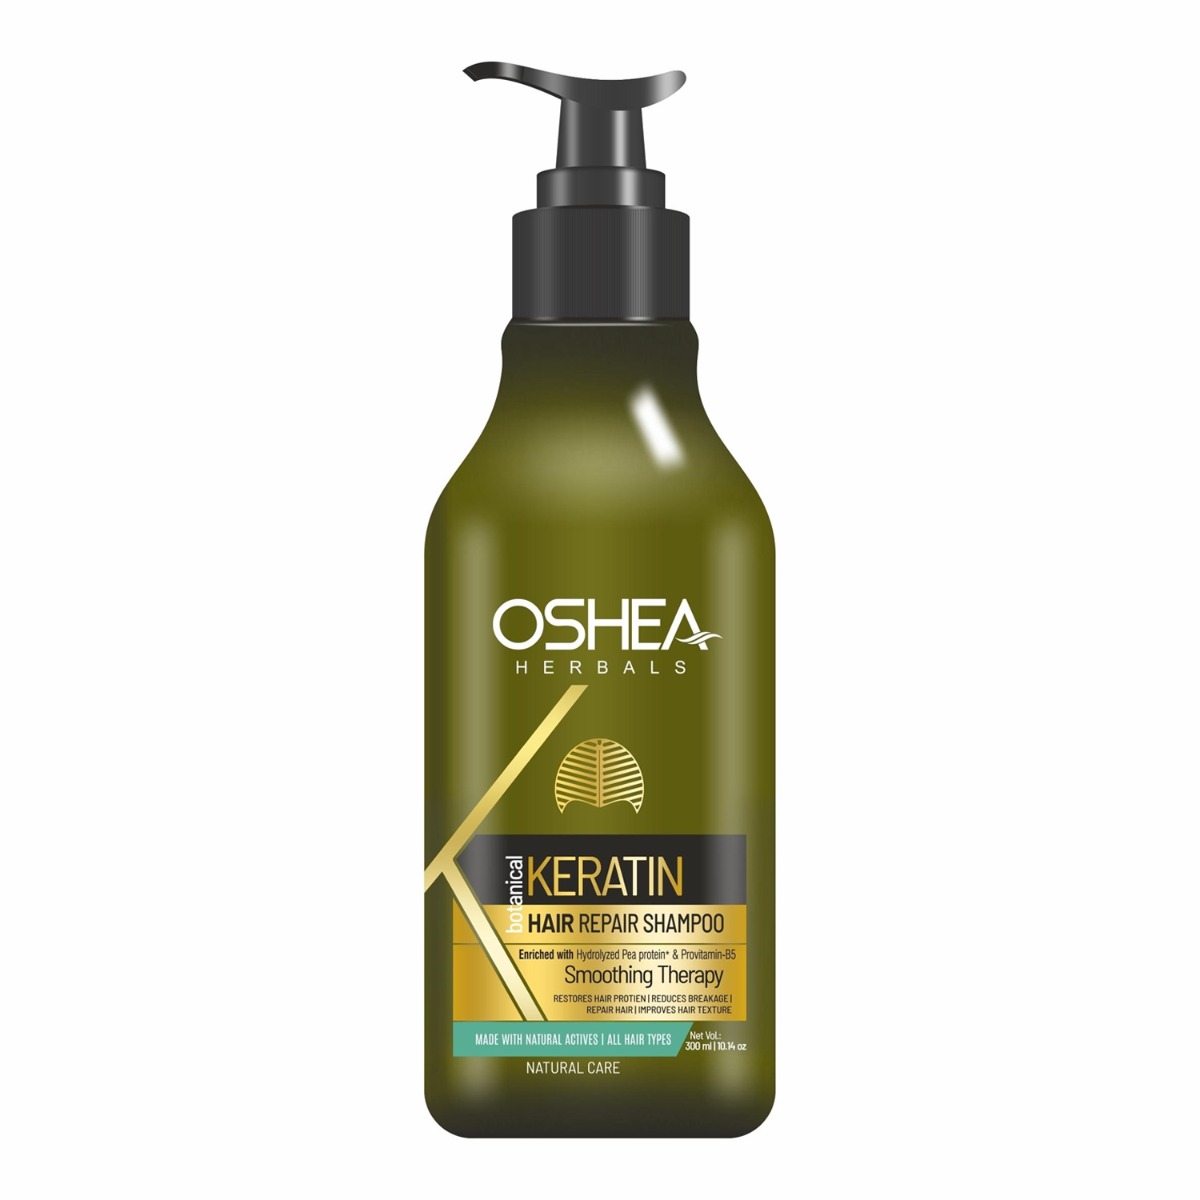 Oshea Herbals Keratin Hair Repair Shampoo, 300ml